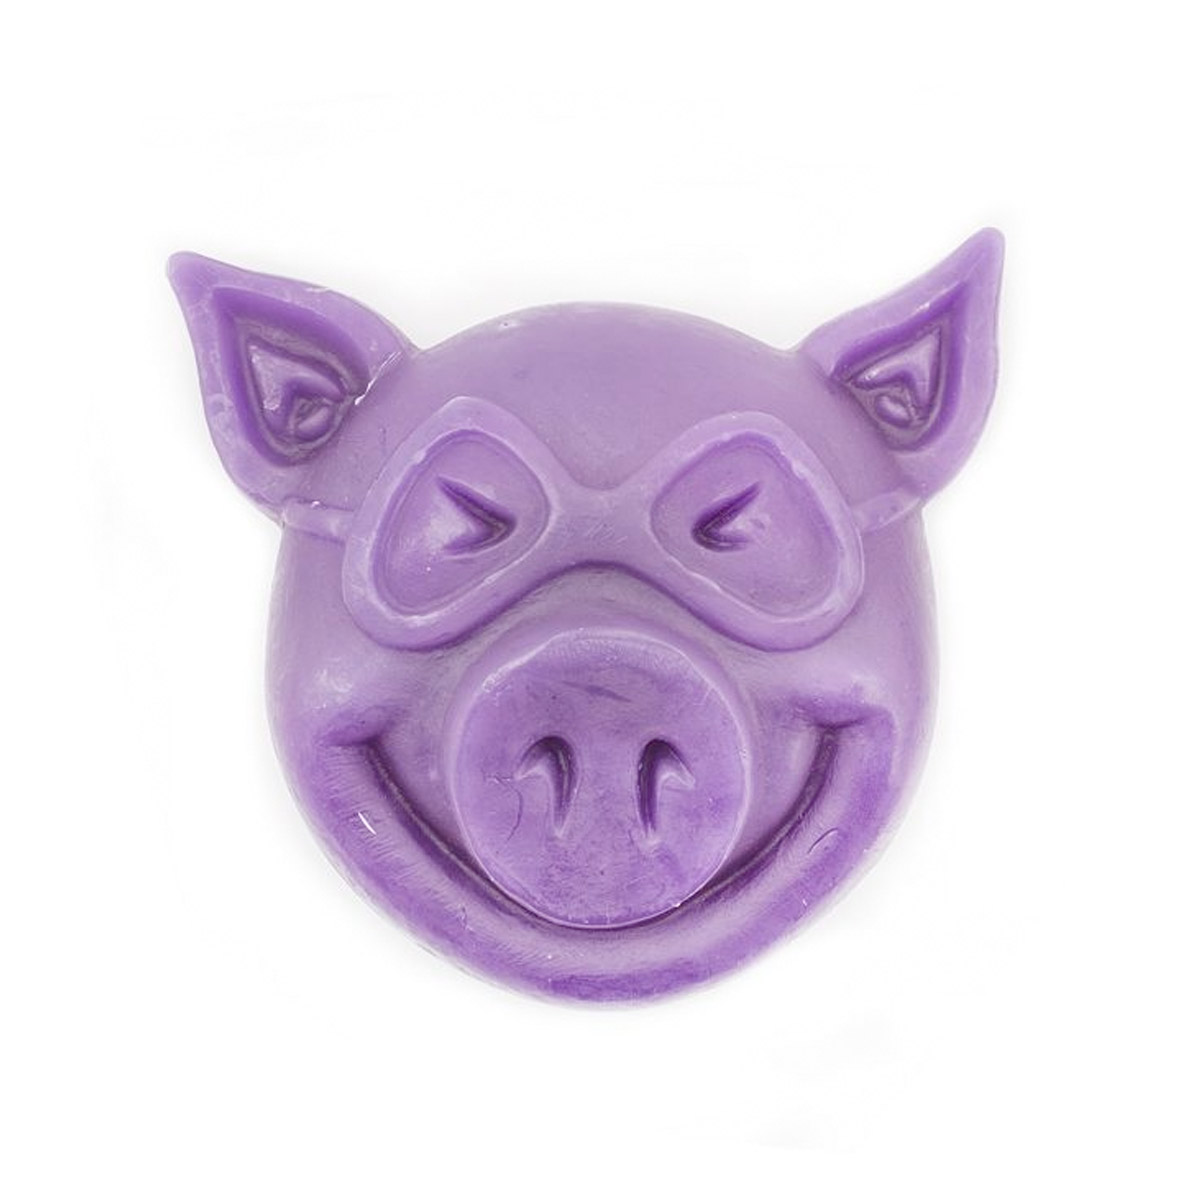 Pig Skatewachs Pig Head Curb Wax (purple)